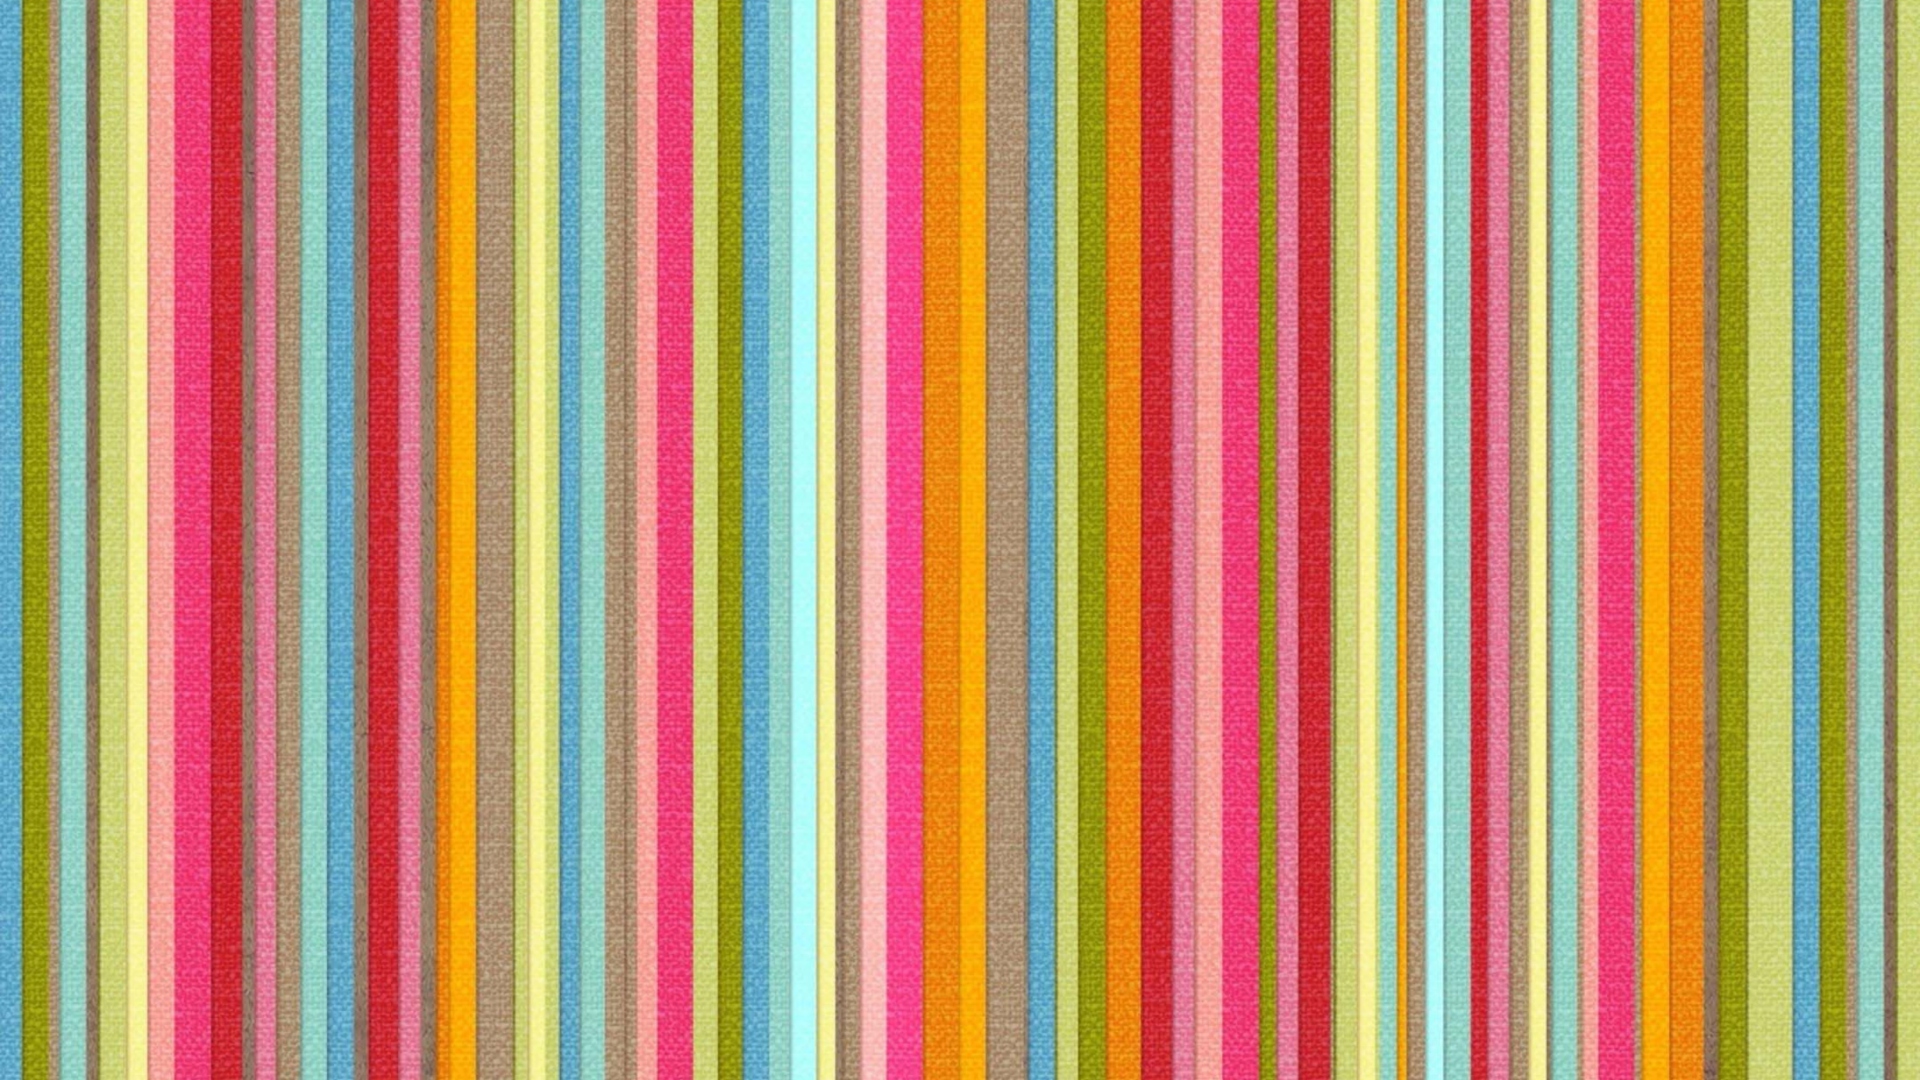 Live Colors wallpaper 1920x1080